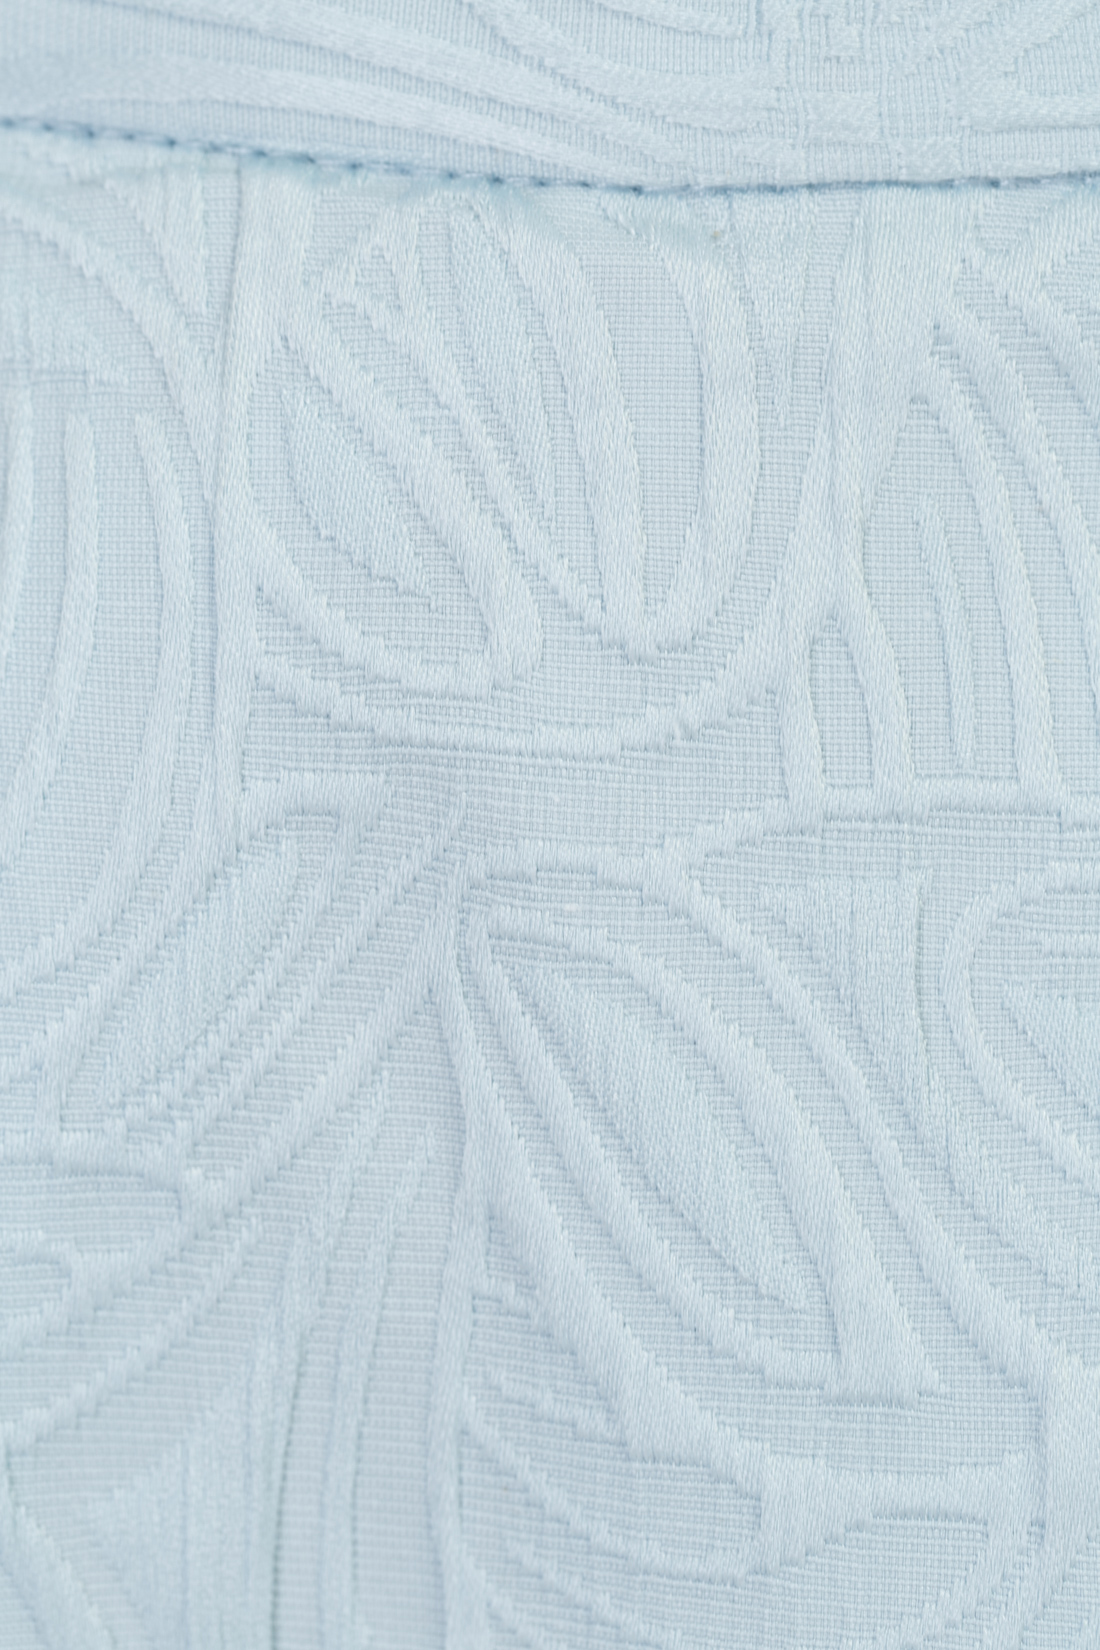 Пышная юбка из жаккардового материала (арт. baon B477027), размер M, цвет белый Пышная юбка из жаккардового материала (арт. baon B477027) - фото 4